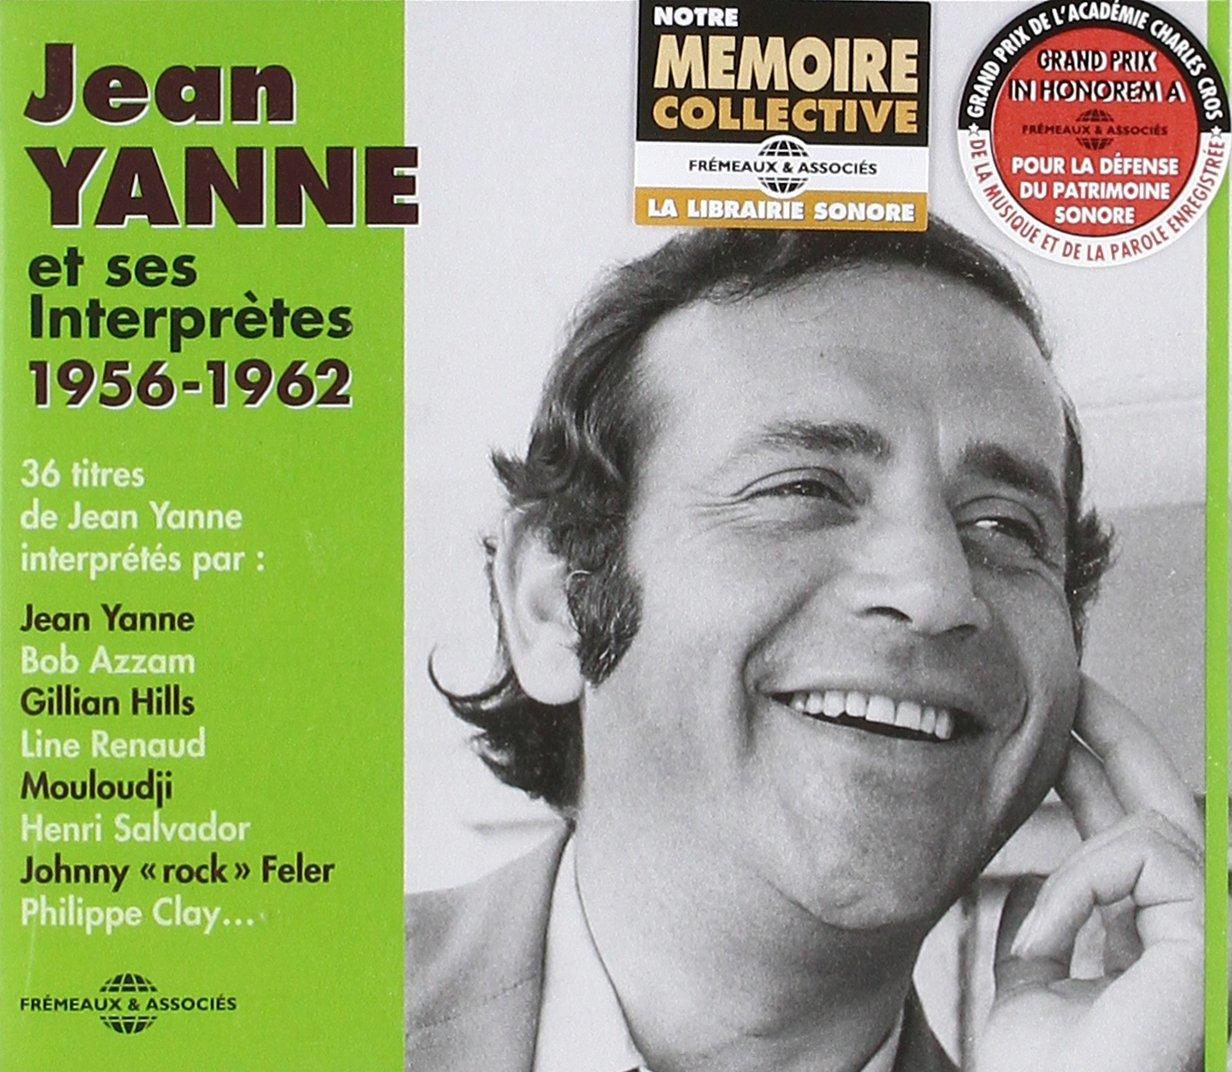 VARIOUS, Jean Yanne Ses Interprètes 1956-1962 (CD) - Yanne - Jean Et